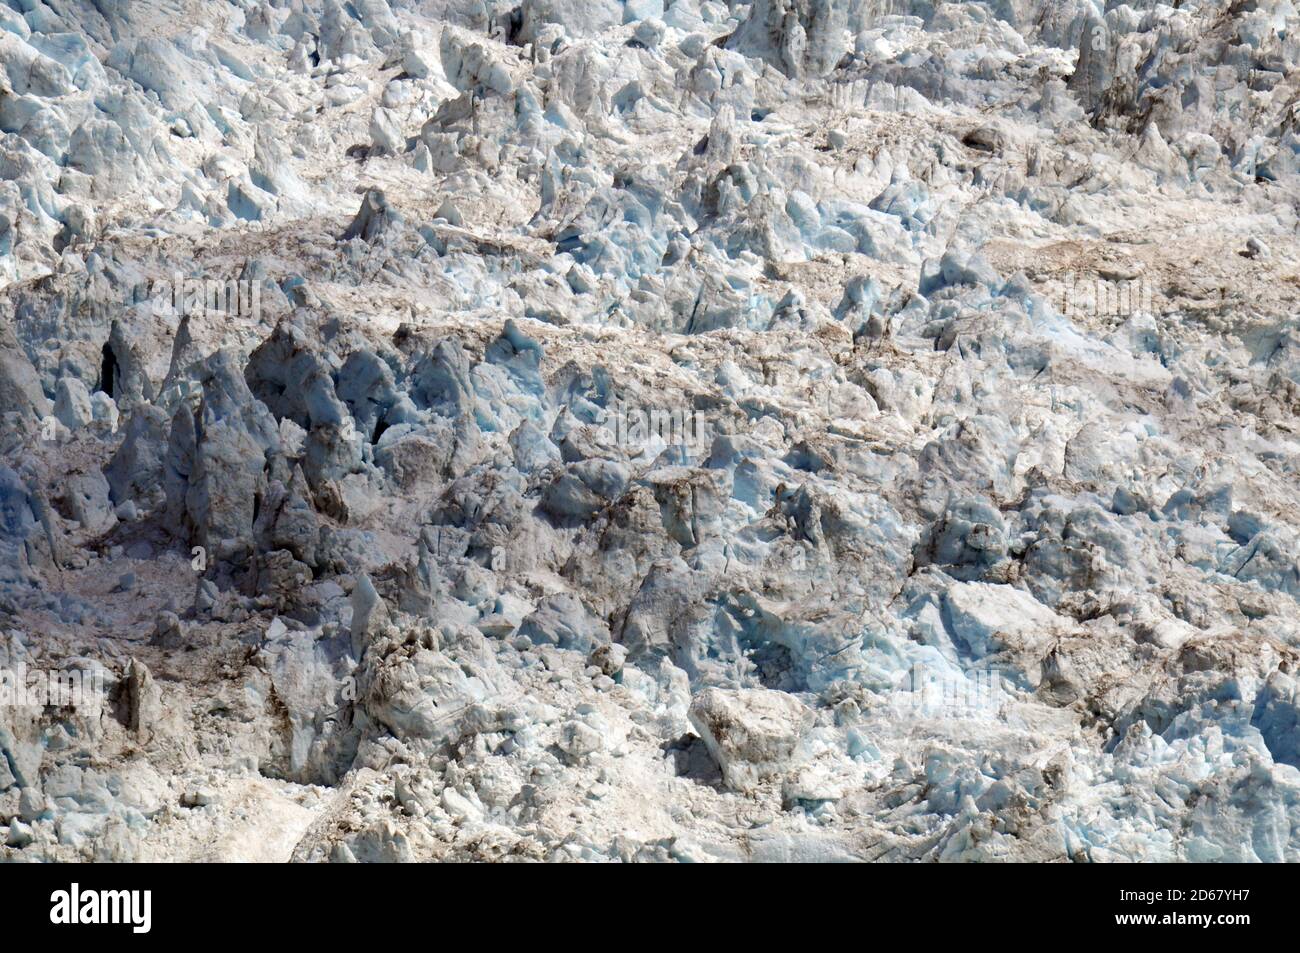 Bloques de hielo en el glaciar Franz Josef, el deshielo de los glaciares debido al cambio climático, Franz Josef, Isla del Sur, Nueva Zelanda Foto de stock